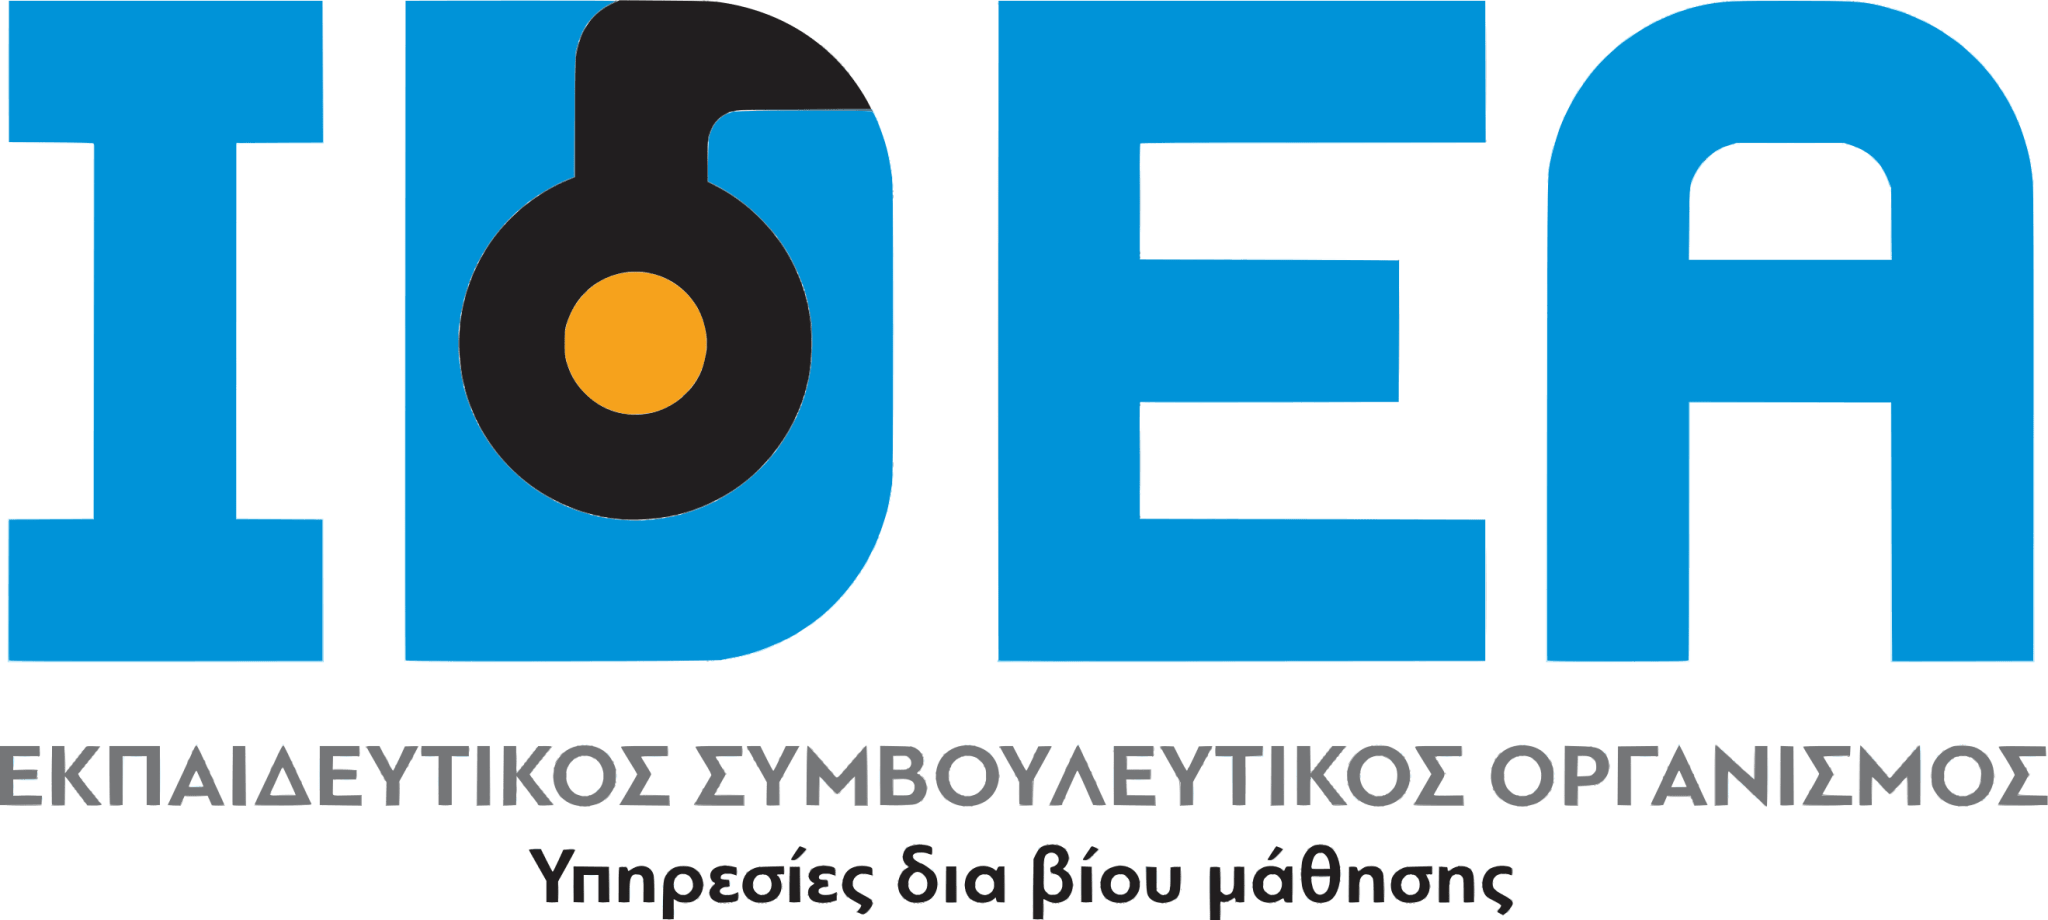 logo-full-no-bg.png